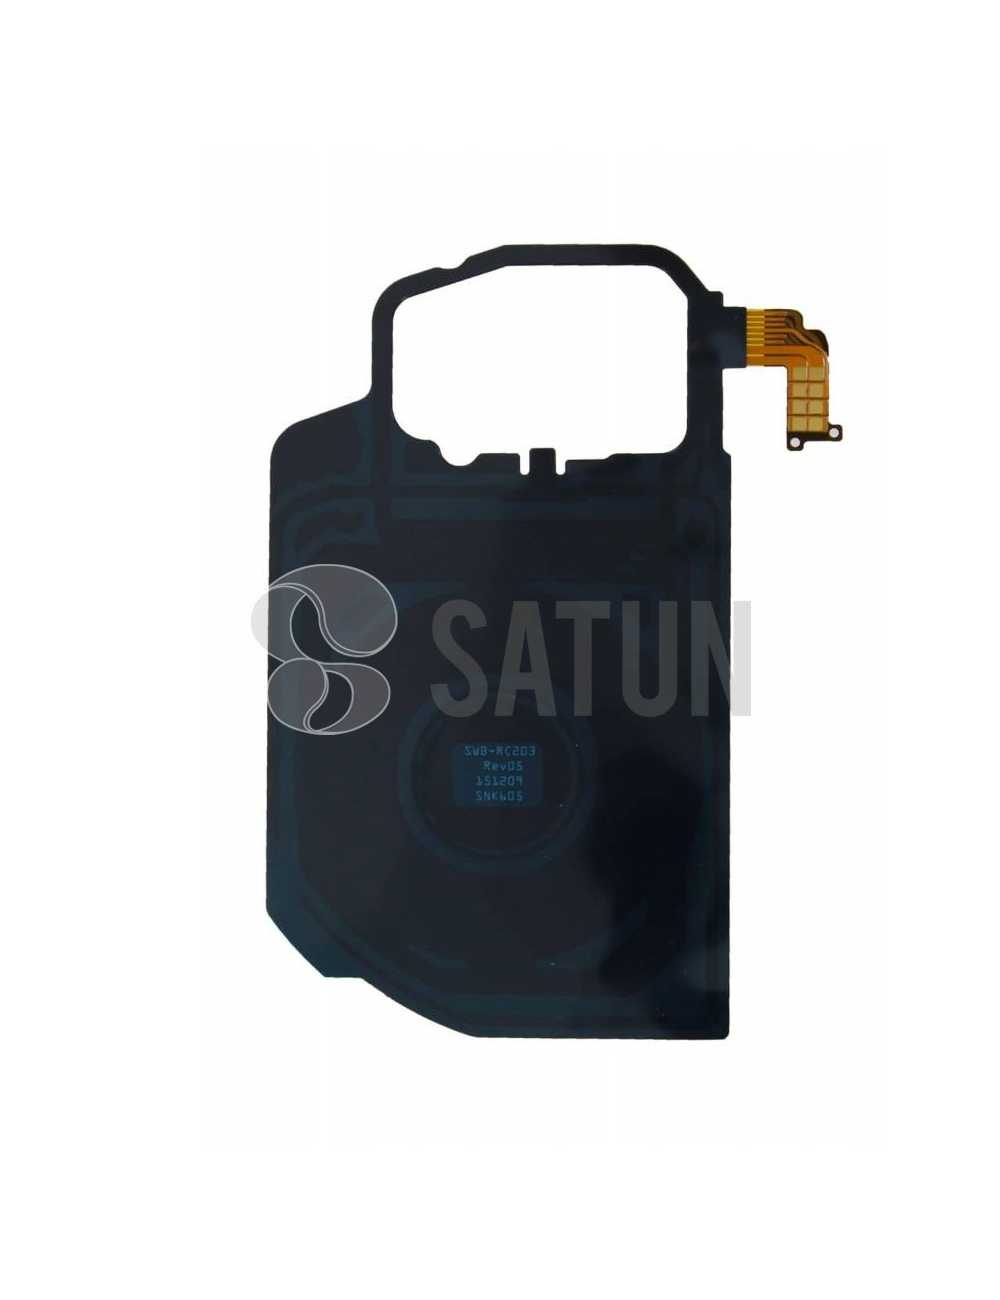 Antena NFC y carga inalámbrica Samsung Galaxy S7